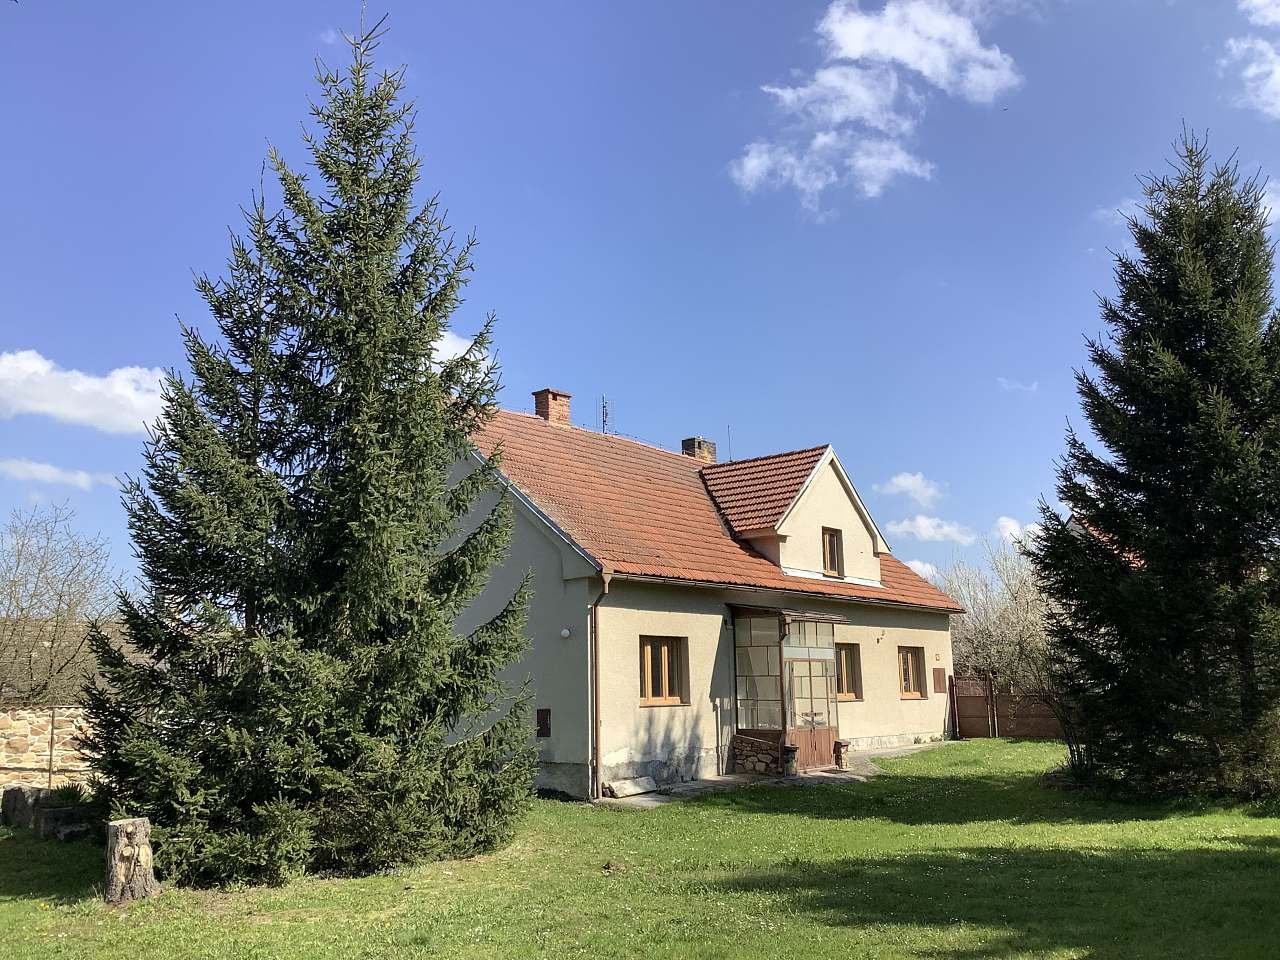 Cottage near the chapel - Zálší near Sepekov